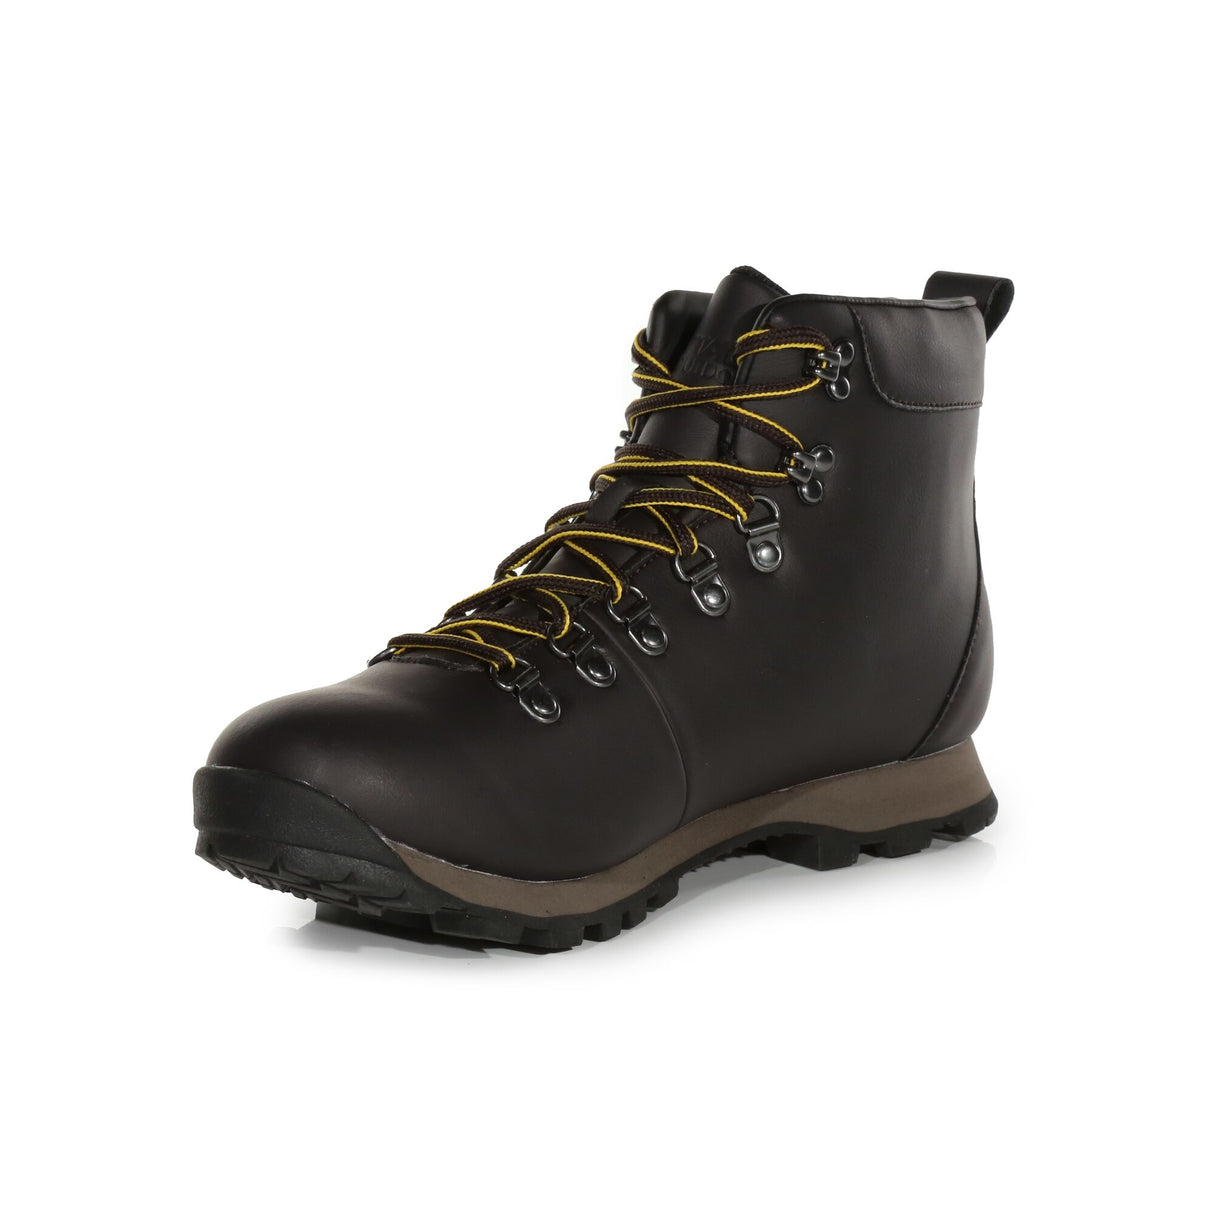 Regatta Cypress Evo Mid Leather Walking Hiking Boots - Brown